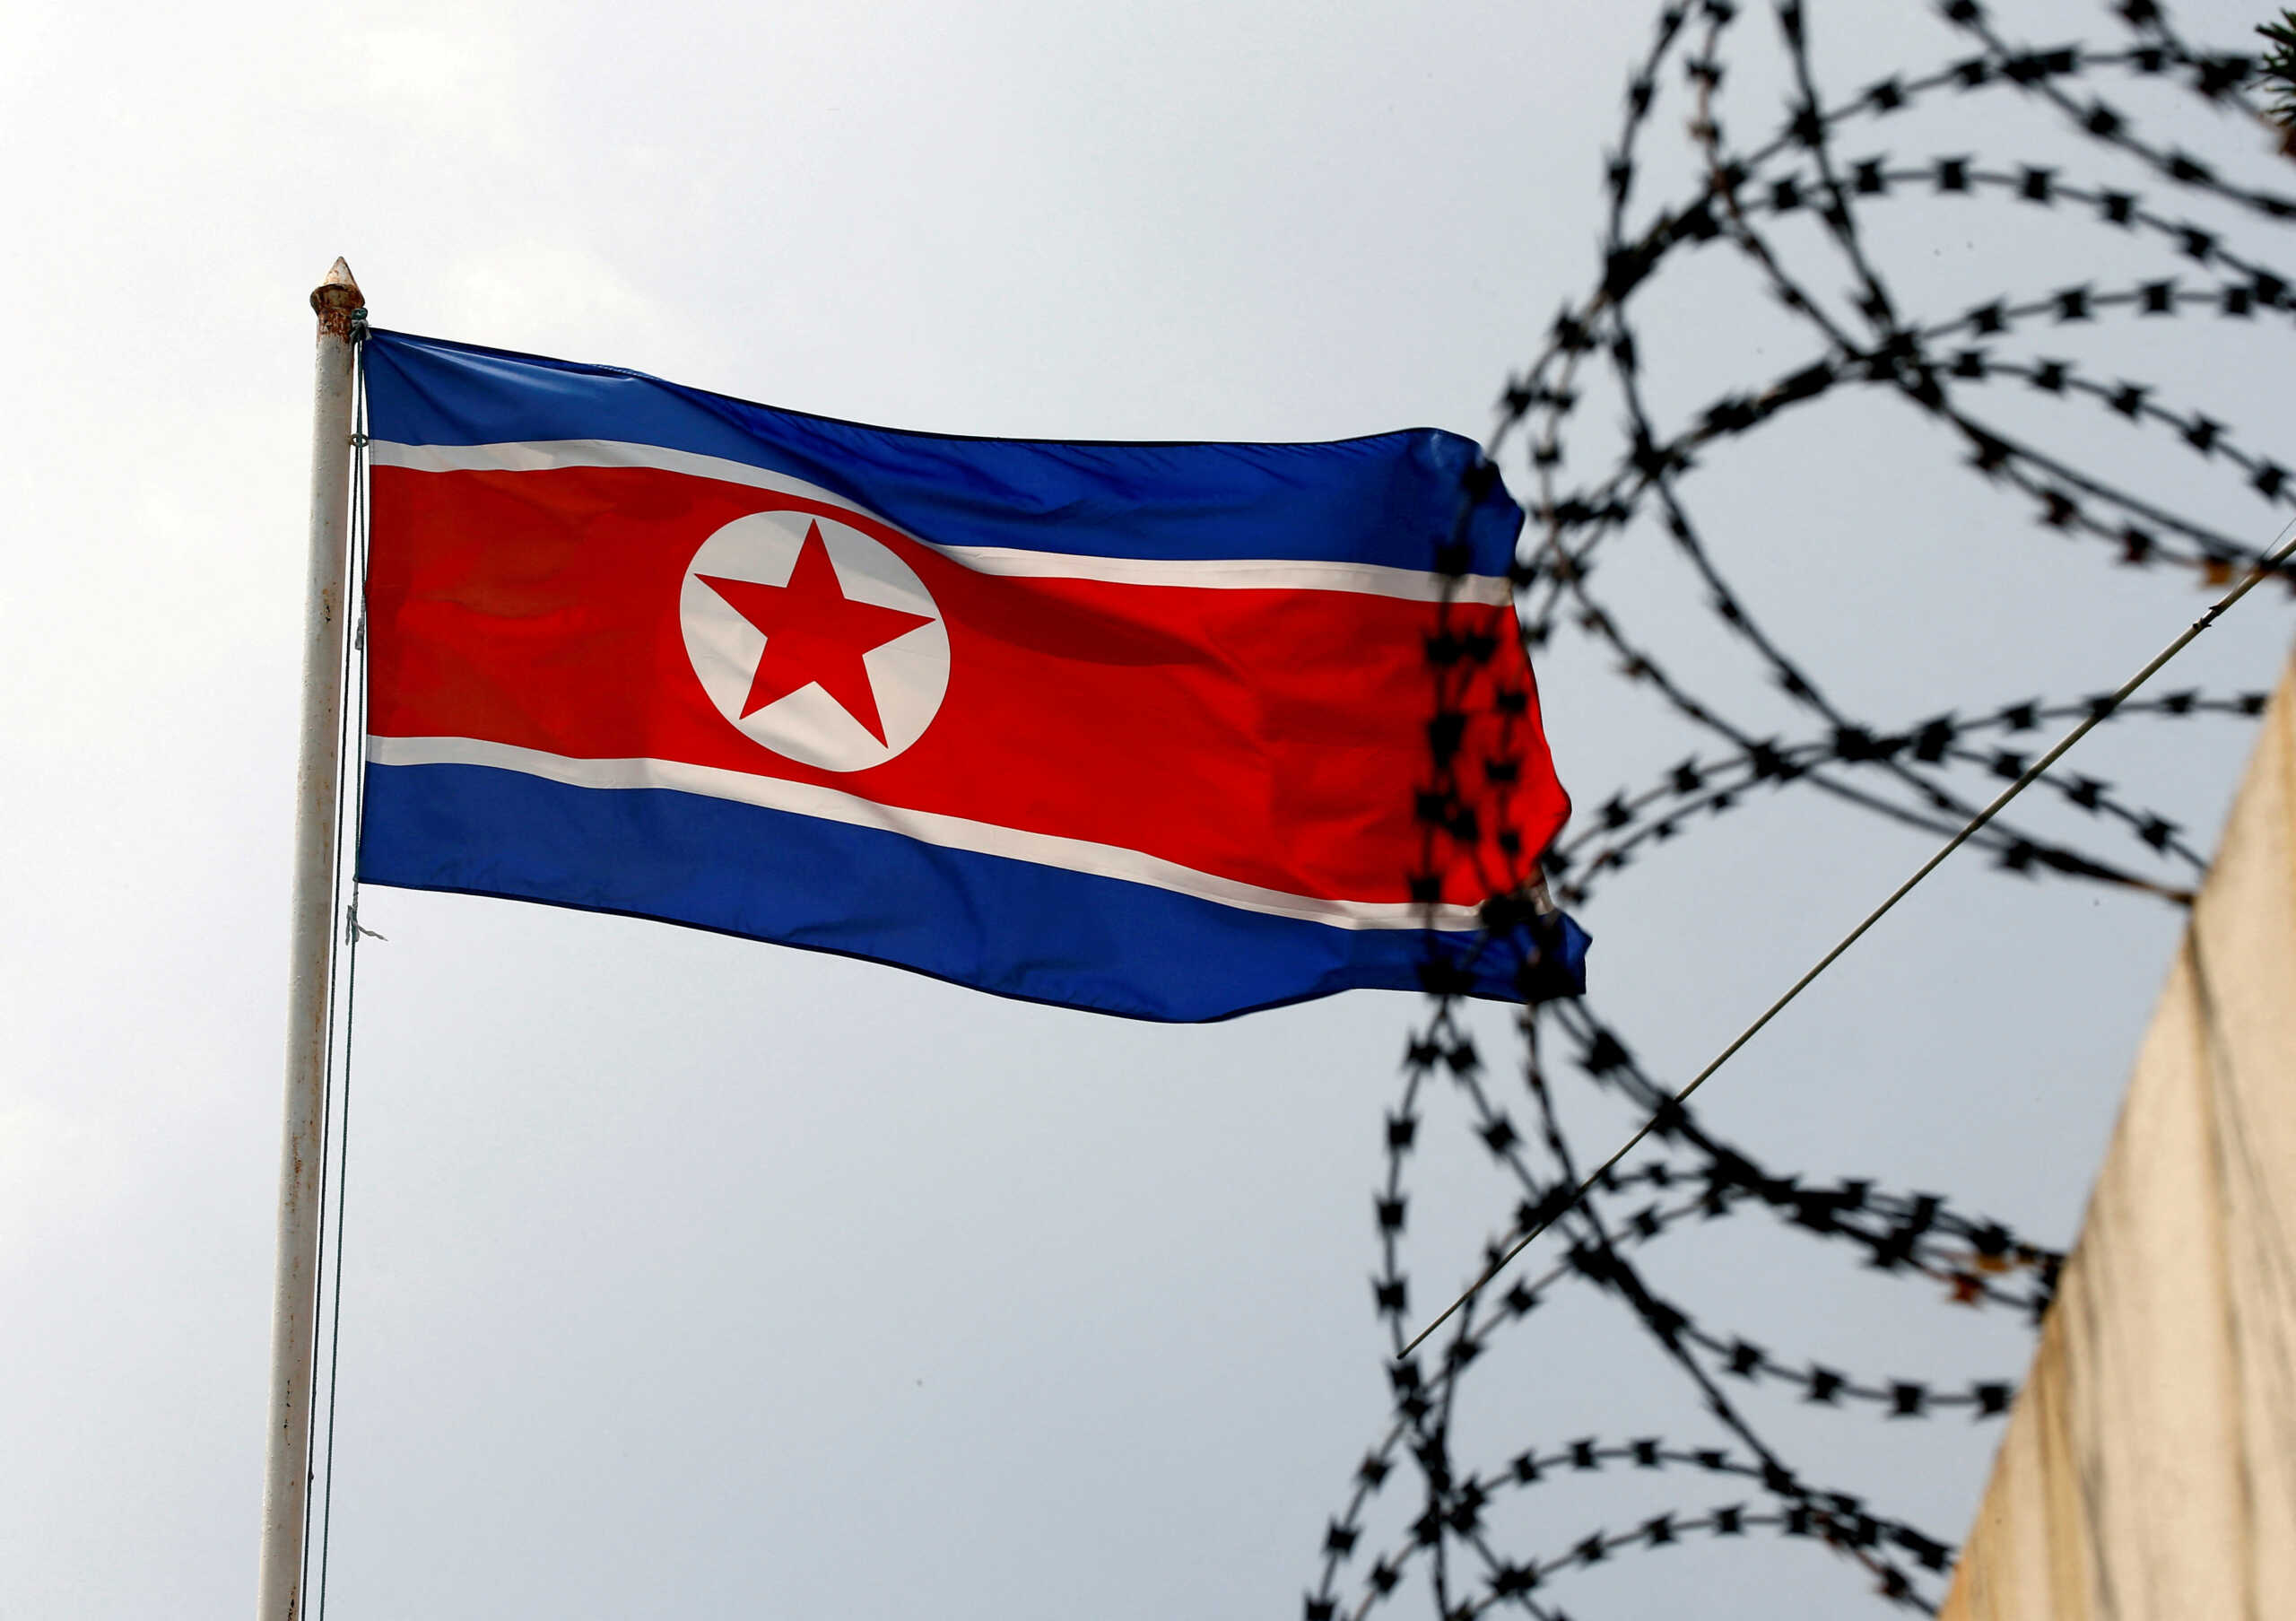 Βόρεια Κορέα: Εκτόξευσε δύο πυραύλους Κρουζ από υποβρύχιο